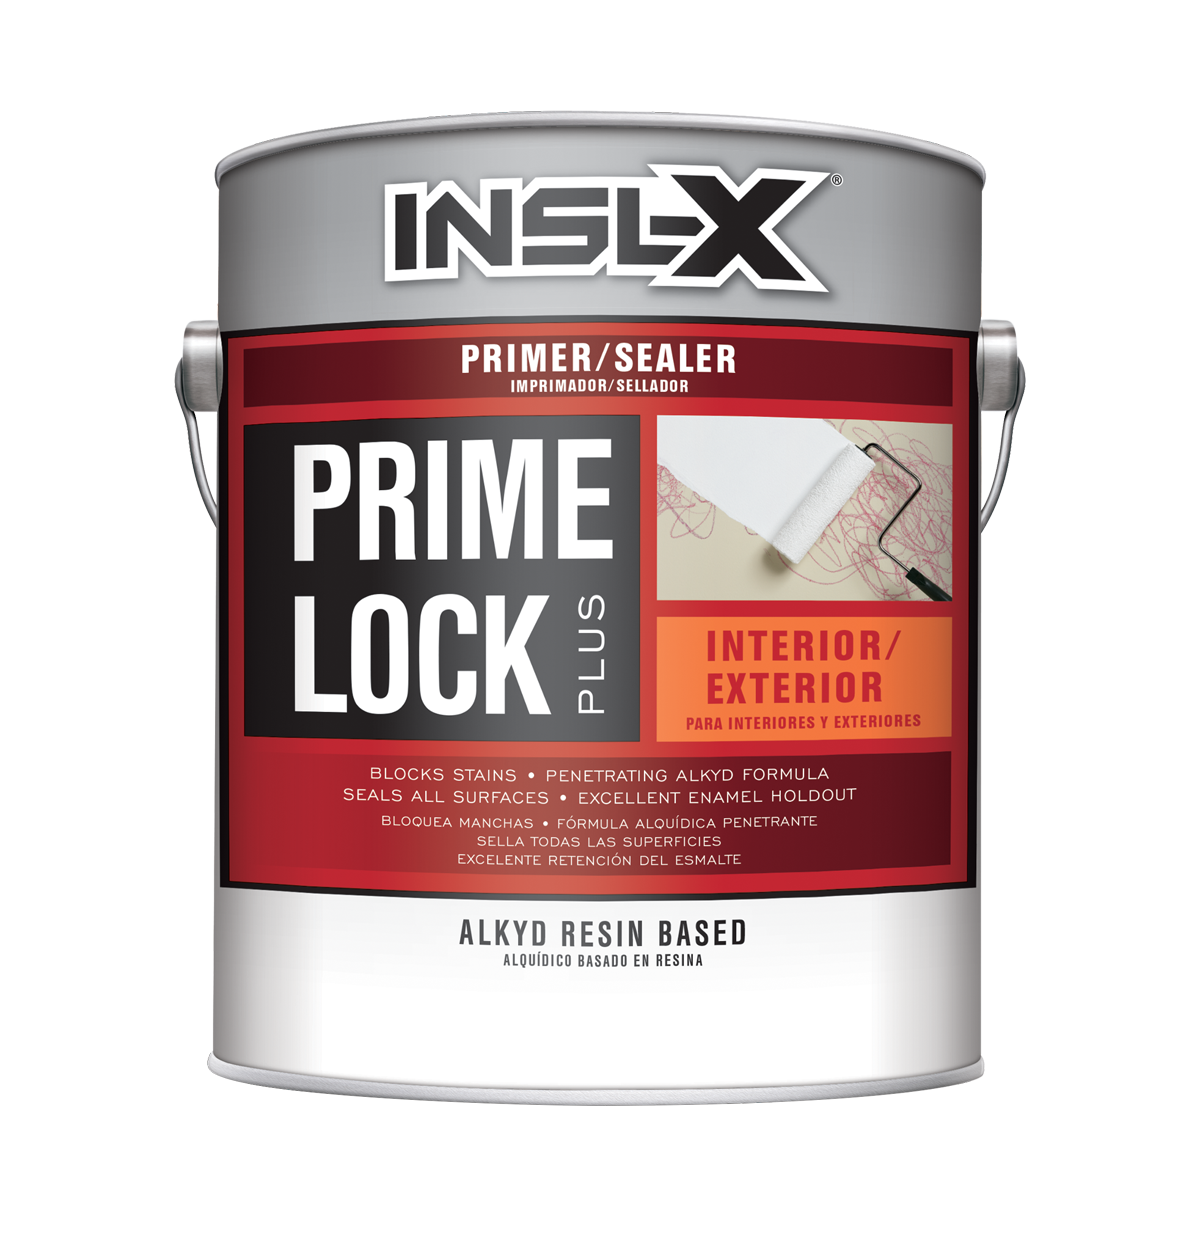 Prime Lock Plus PS-8100